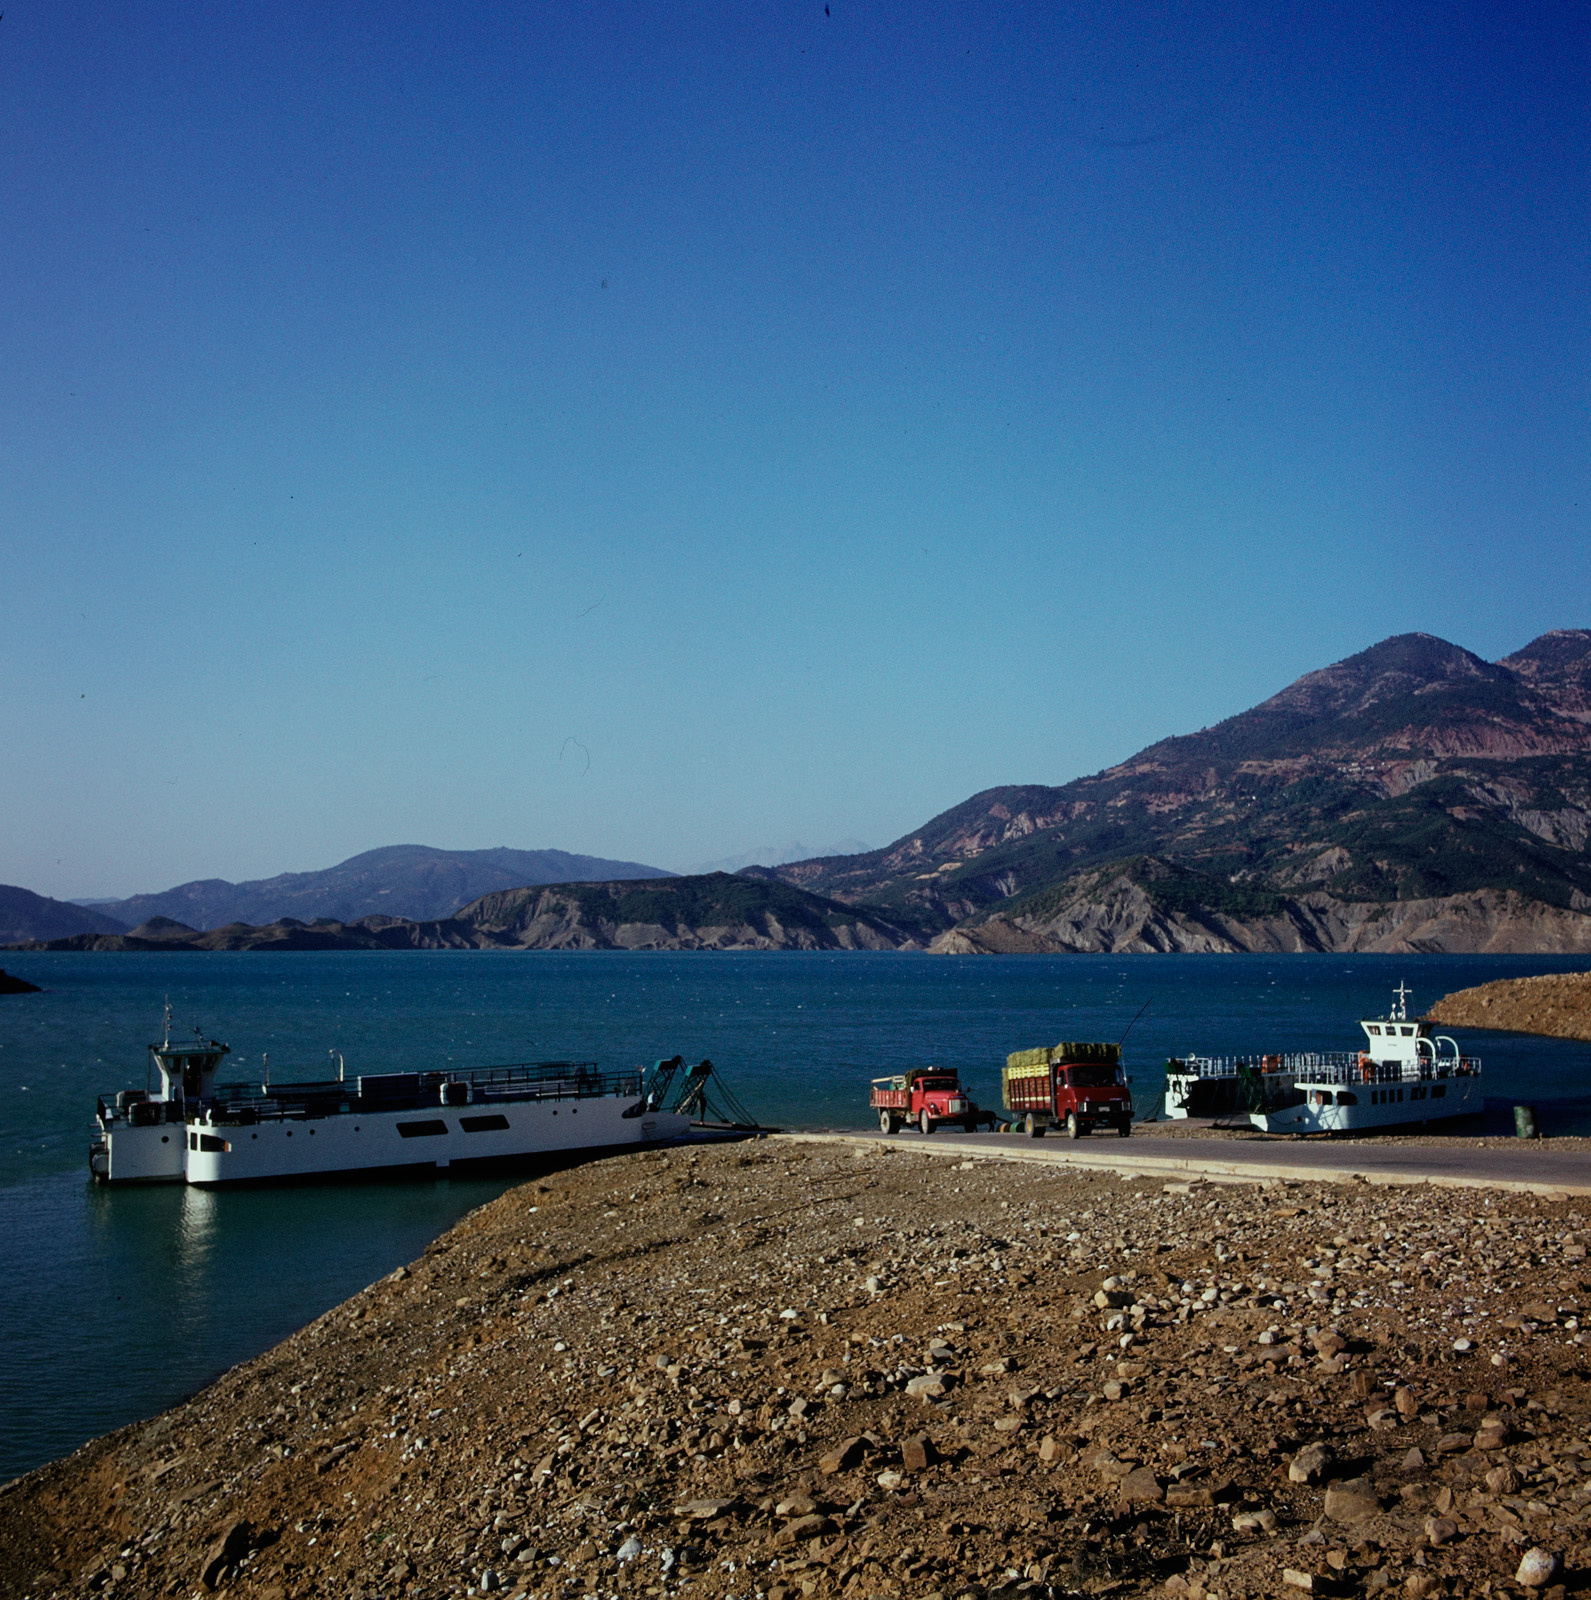 Λίμνη Κρεμαστών: Όταν είχε ferry boat αντί γέφυρας